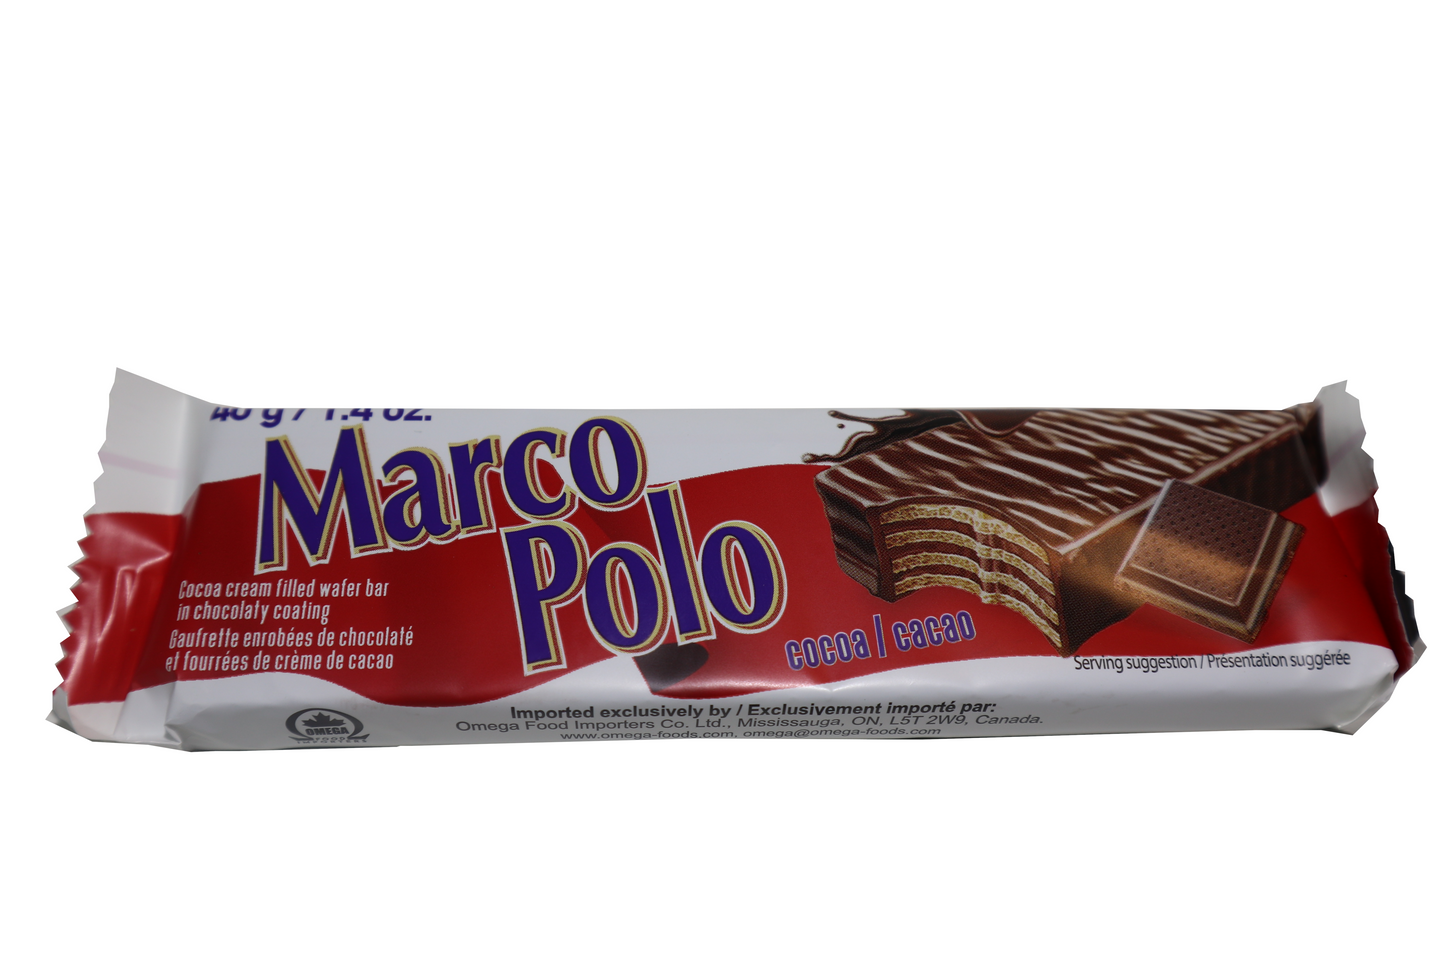 Marco Polo Cacao